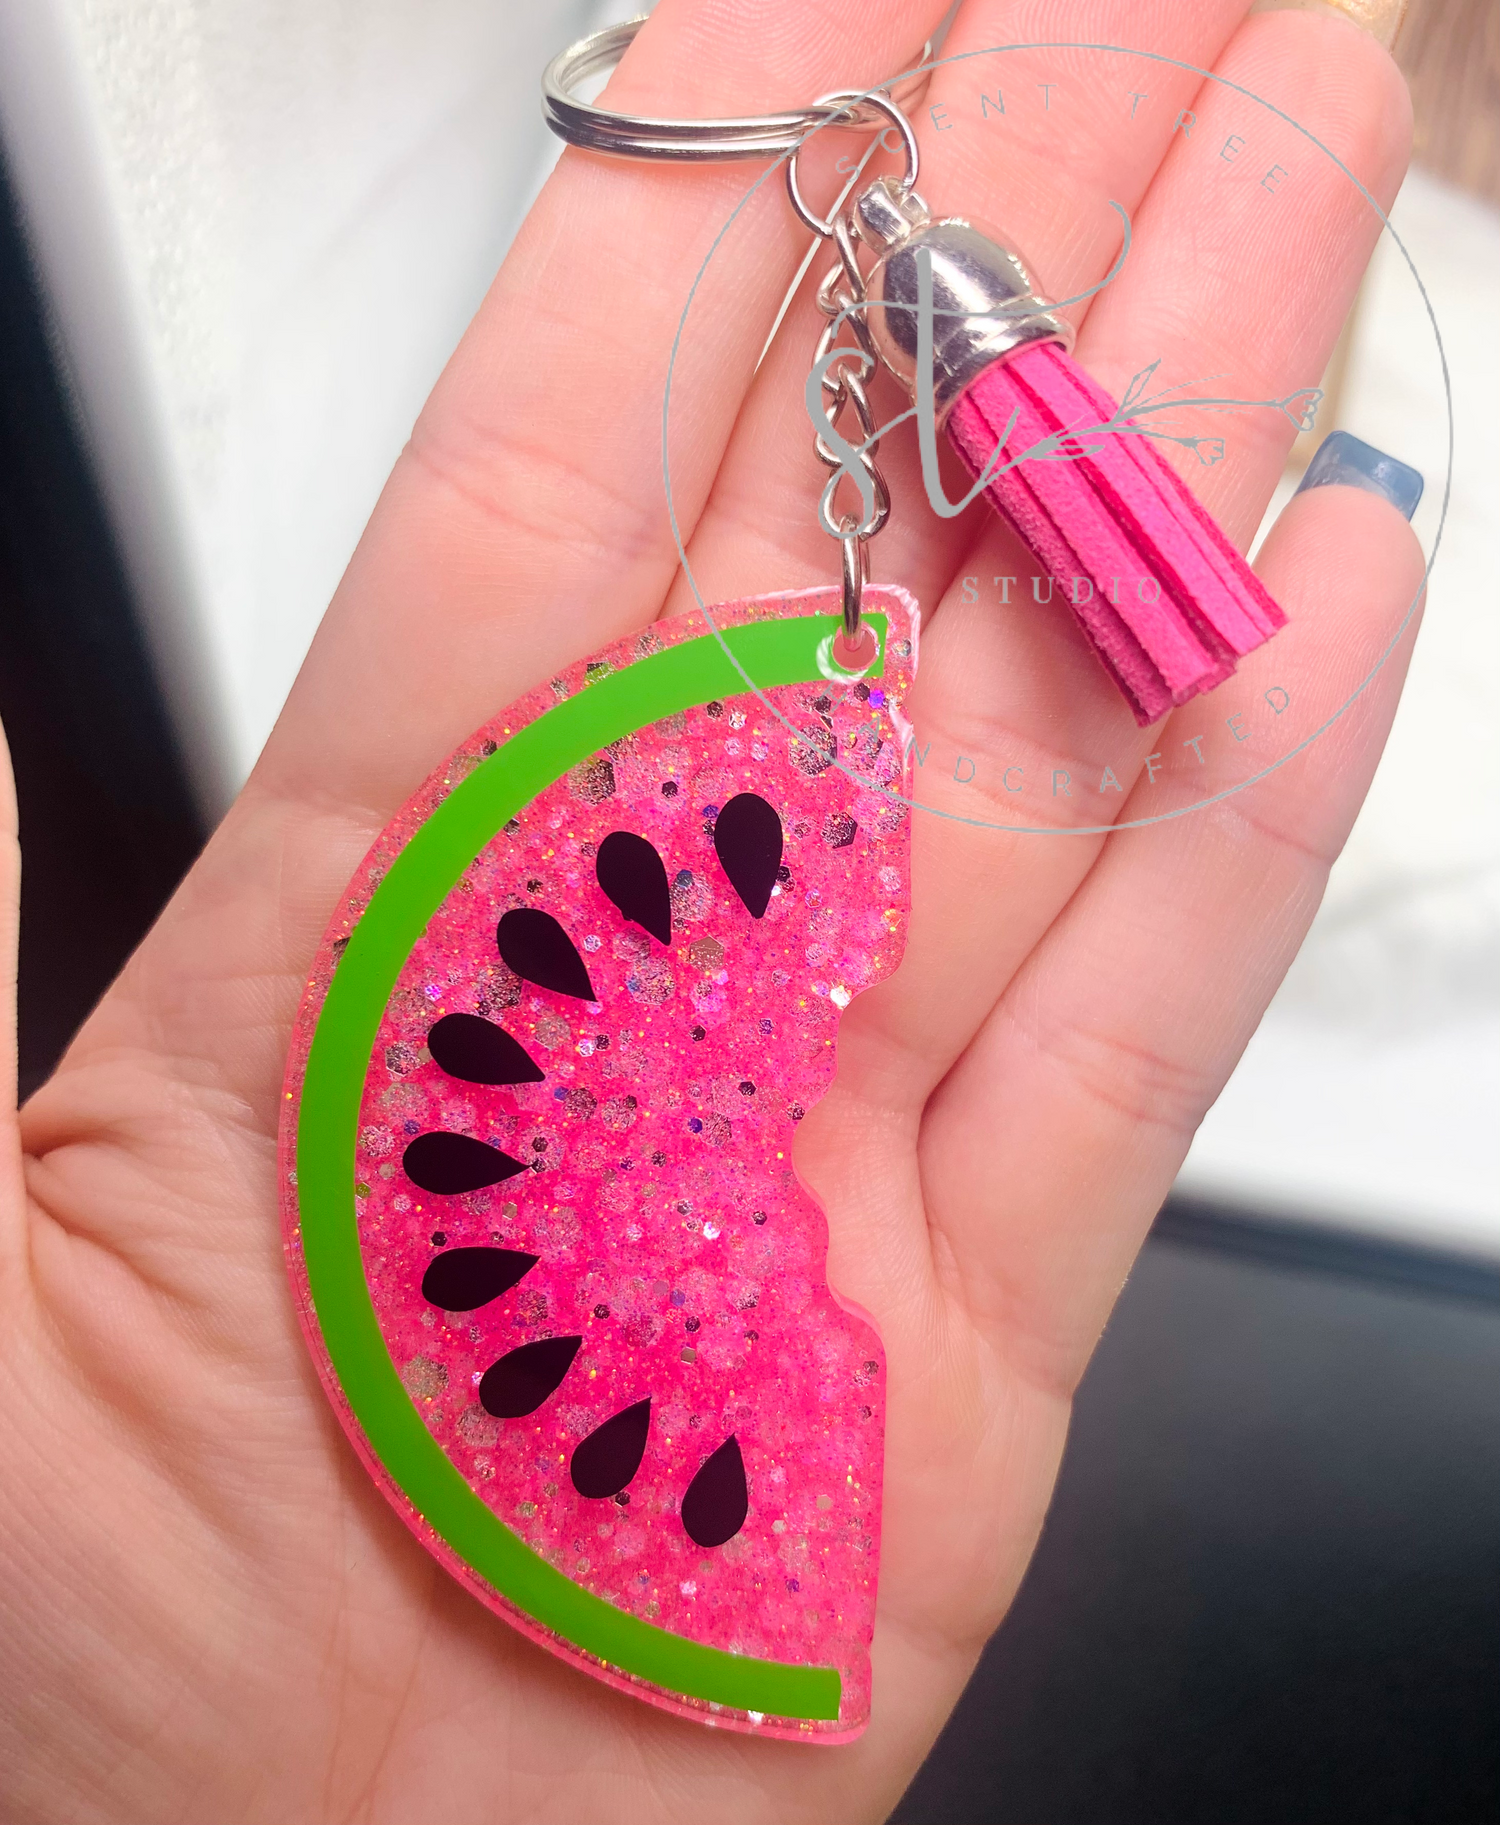 Watermelon Wedge Keychain - 3 Inch - Scent Tree Studio